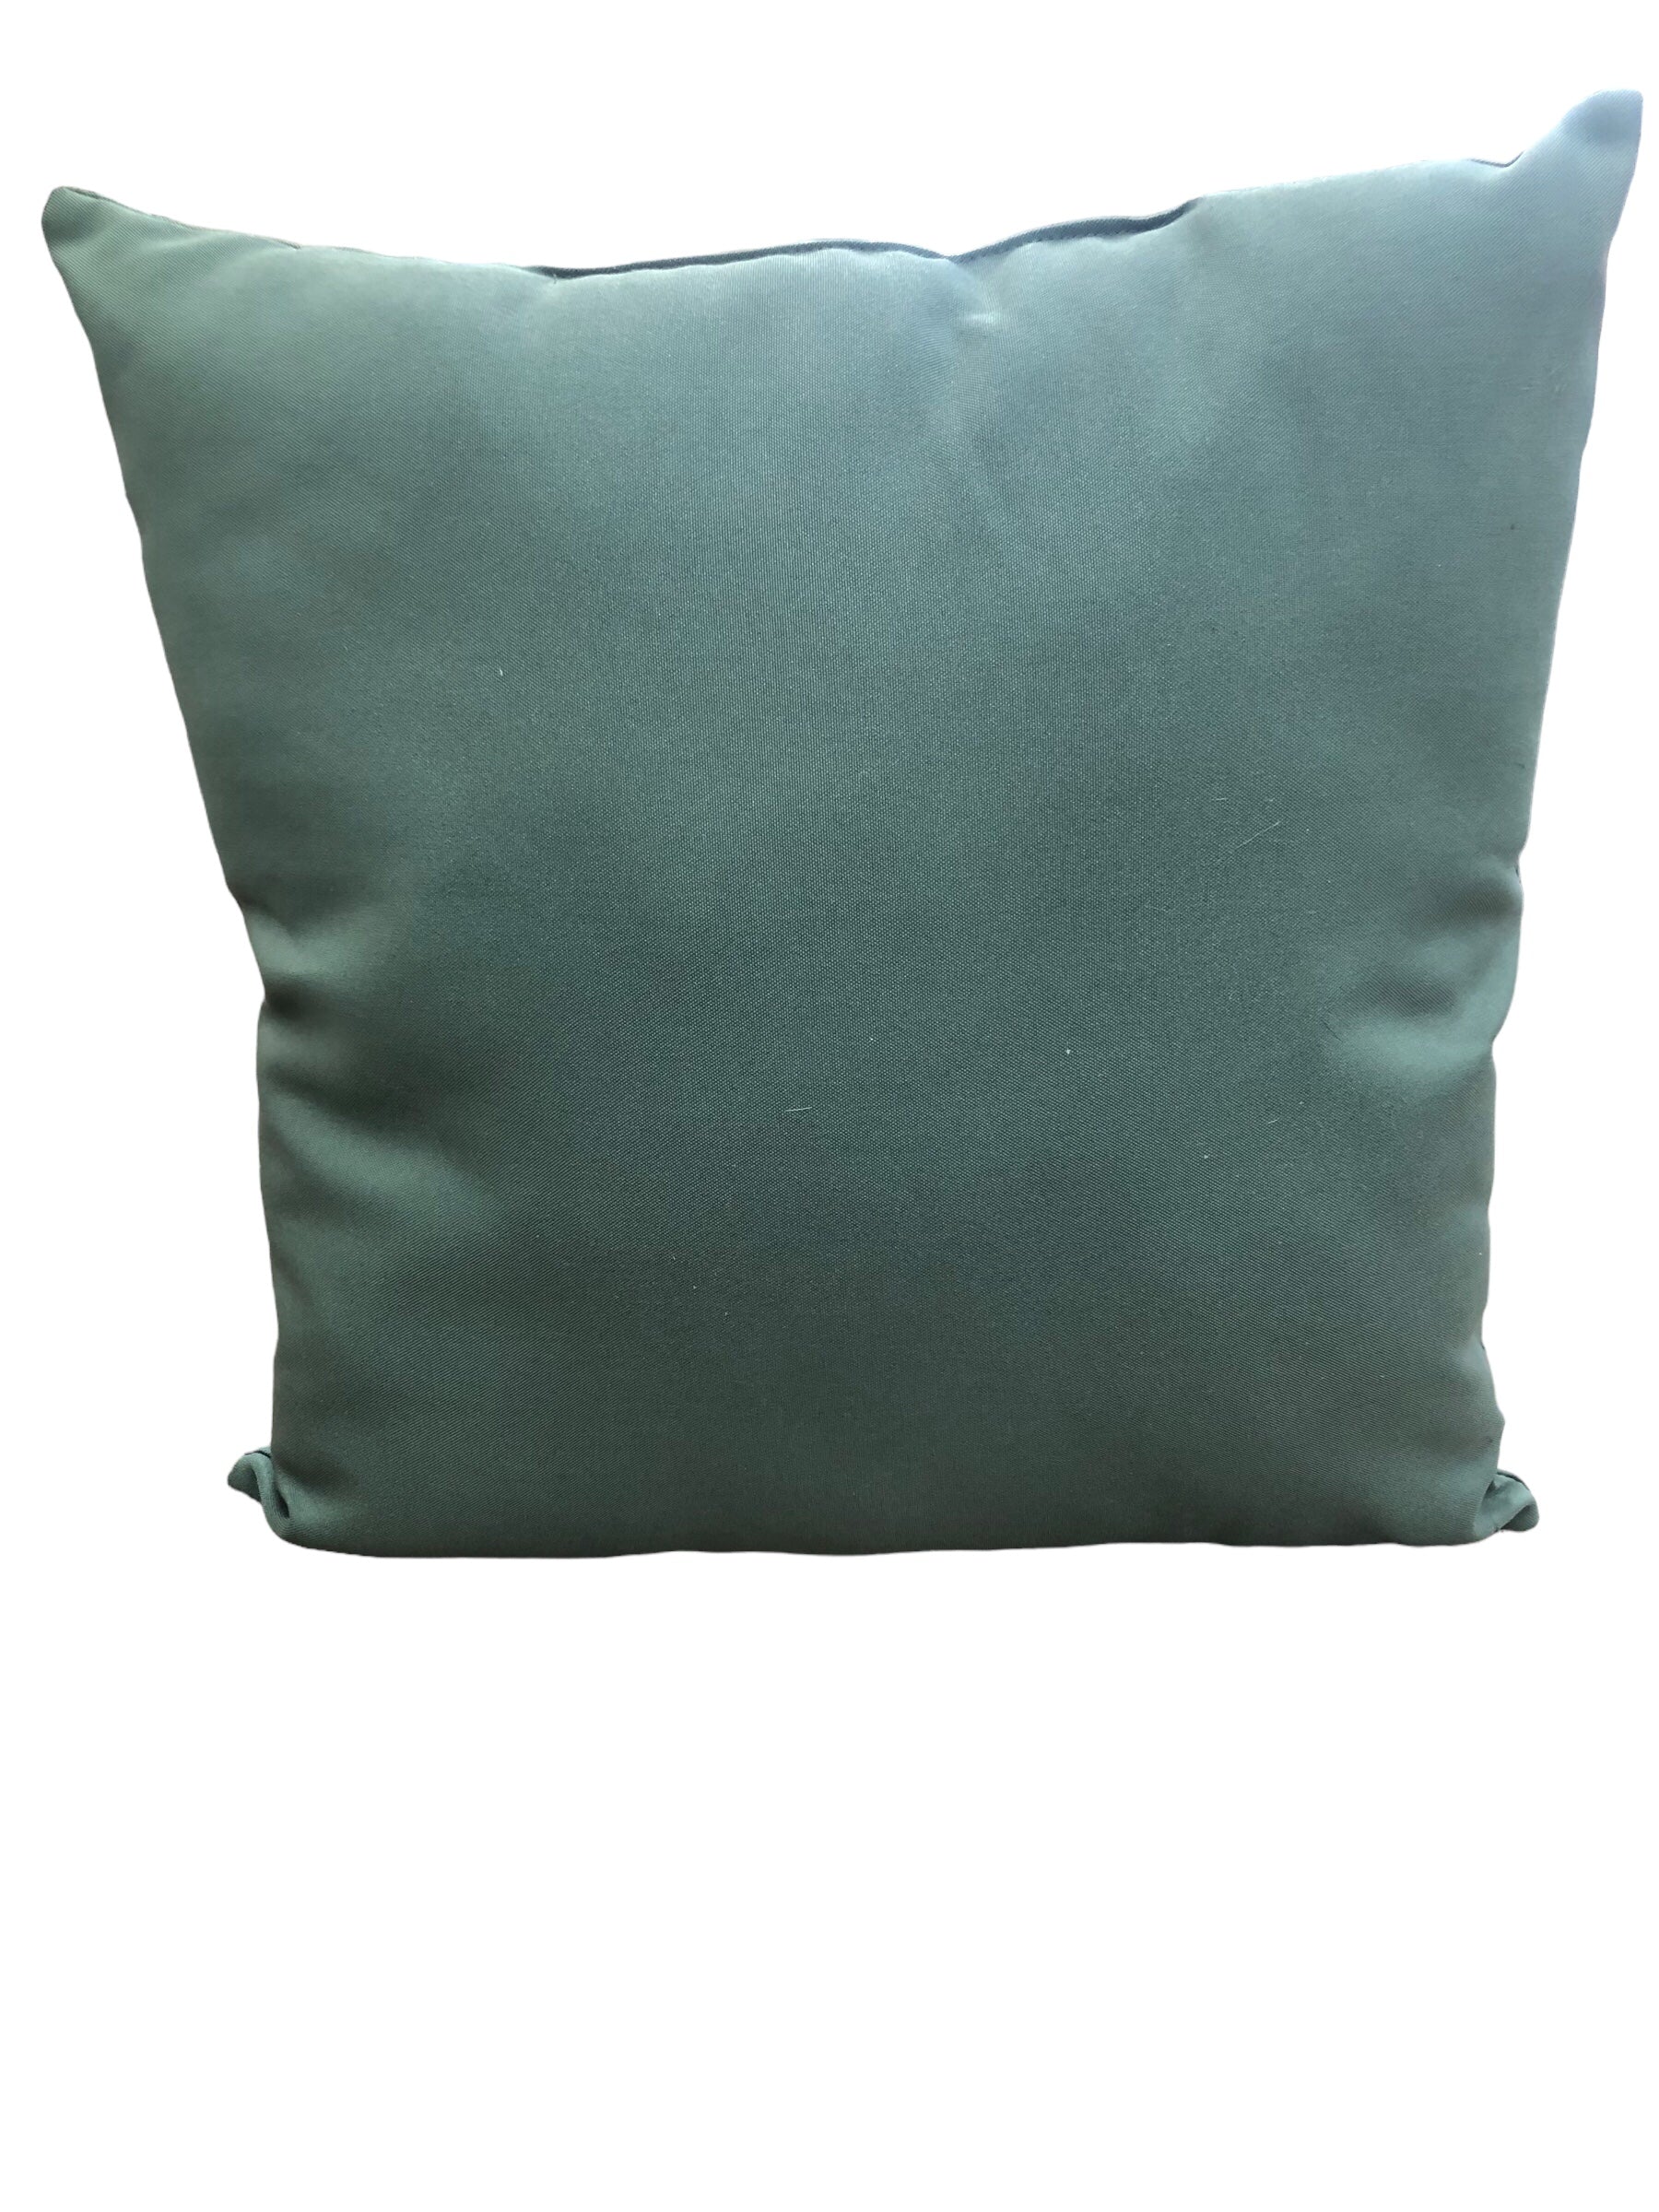 Green pillow